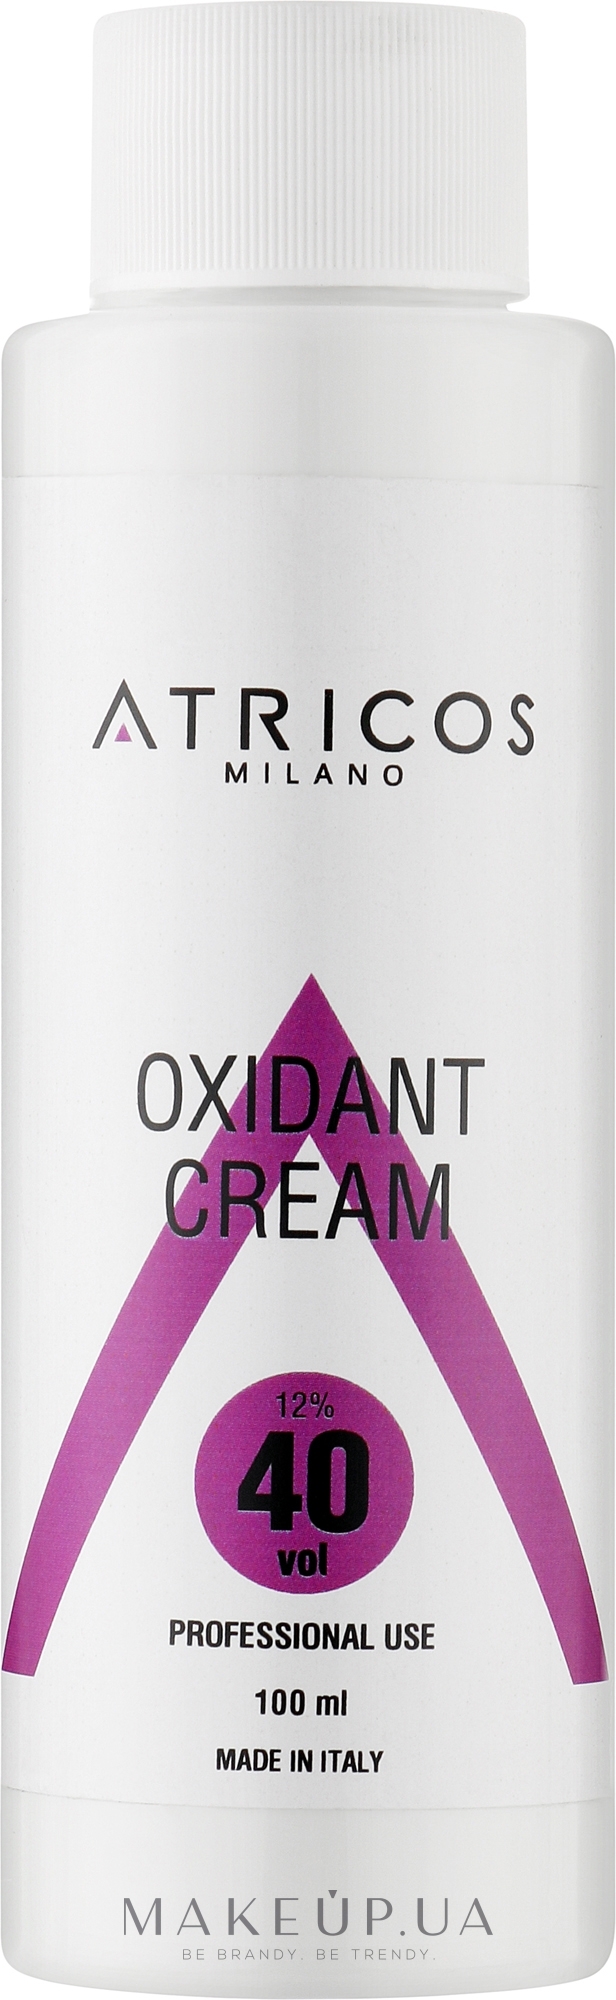 Оксидант-крем для окрашивания и осветления прядей - Atricos Oxidant Cream 40 Vol 12% — фото 100ml